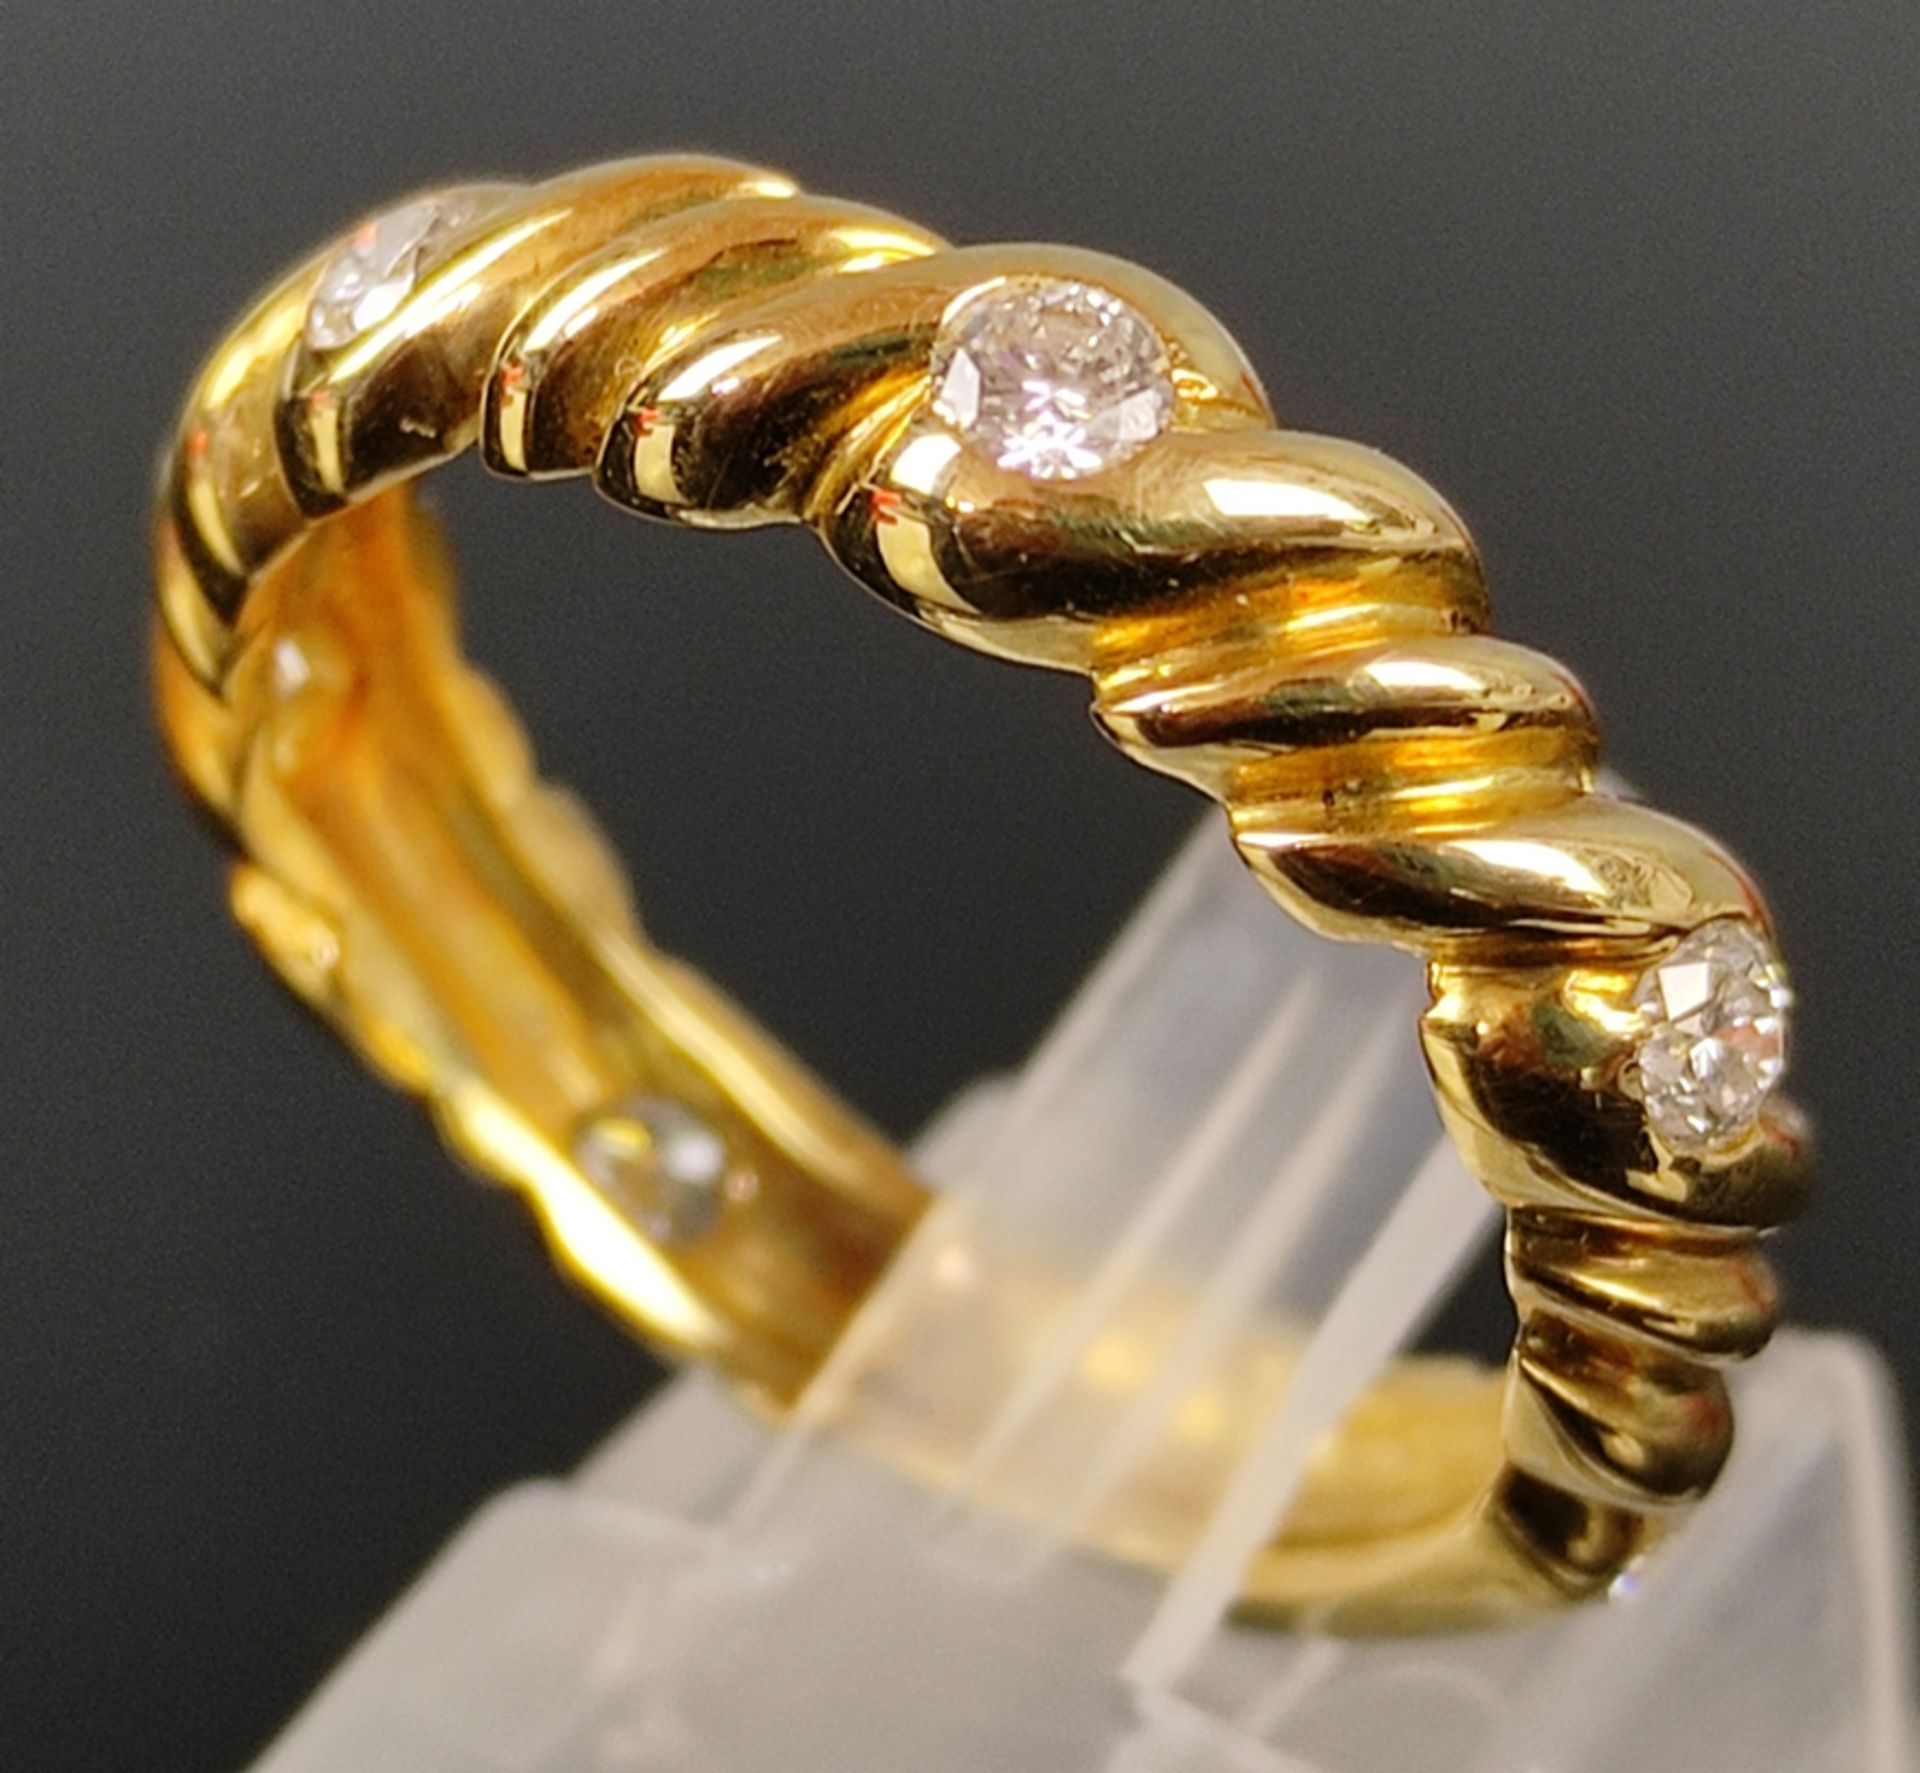 Ring mit 6 Brillanten, zusammen um 0,3ct, 750/18K Gelbgold (getestet), in elegantem Etui, 6,3g, Grö - Bild 2 aus 3